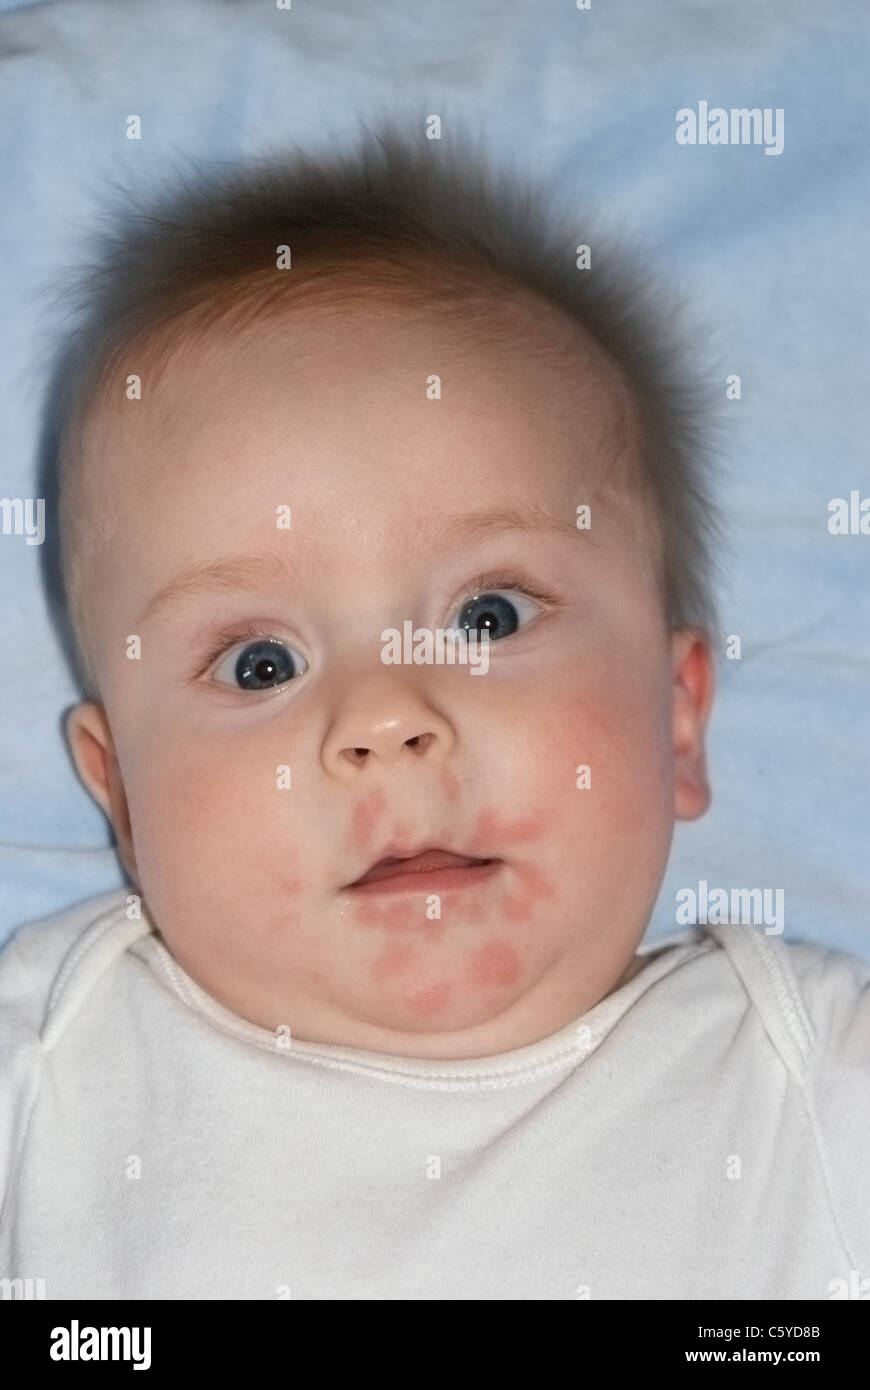 Baby with allergic Banque de photographies et d'images à haute ...